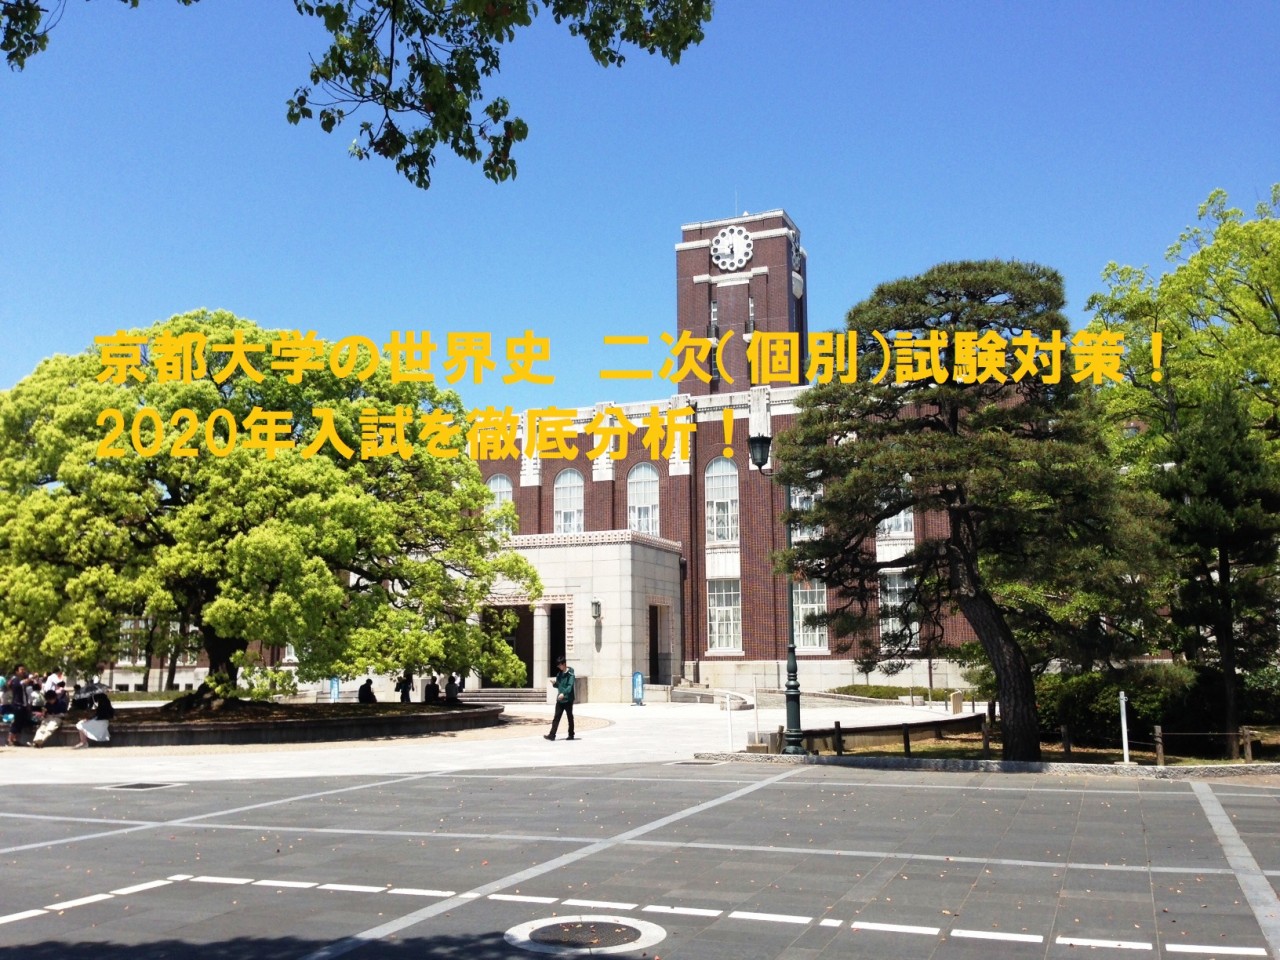 京都大学の世界史　二次（個別）試験対策！2020年入試を徹底分析！